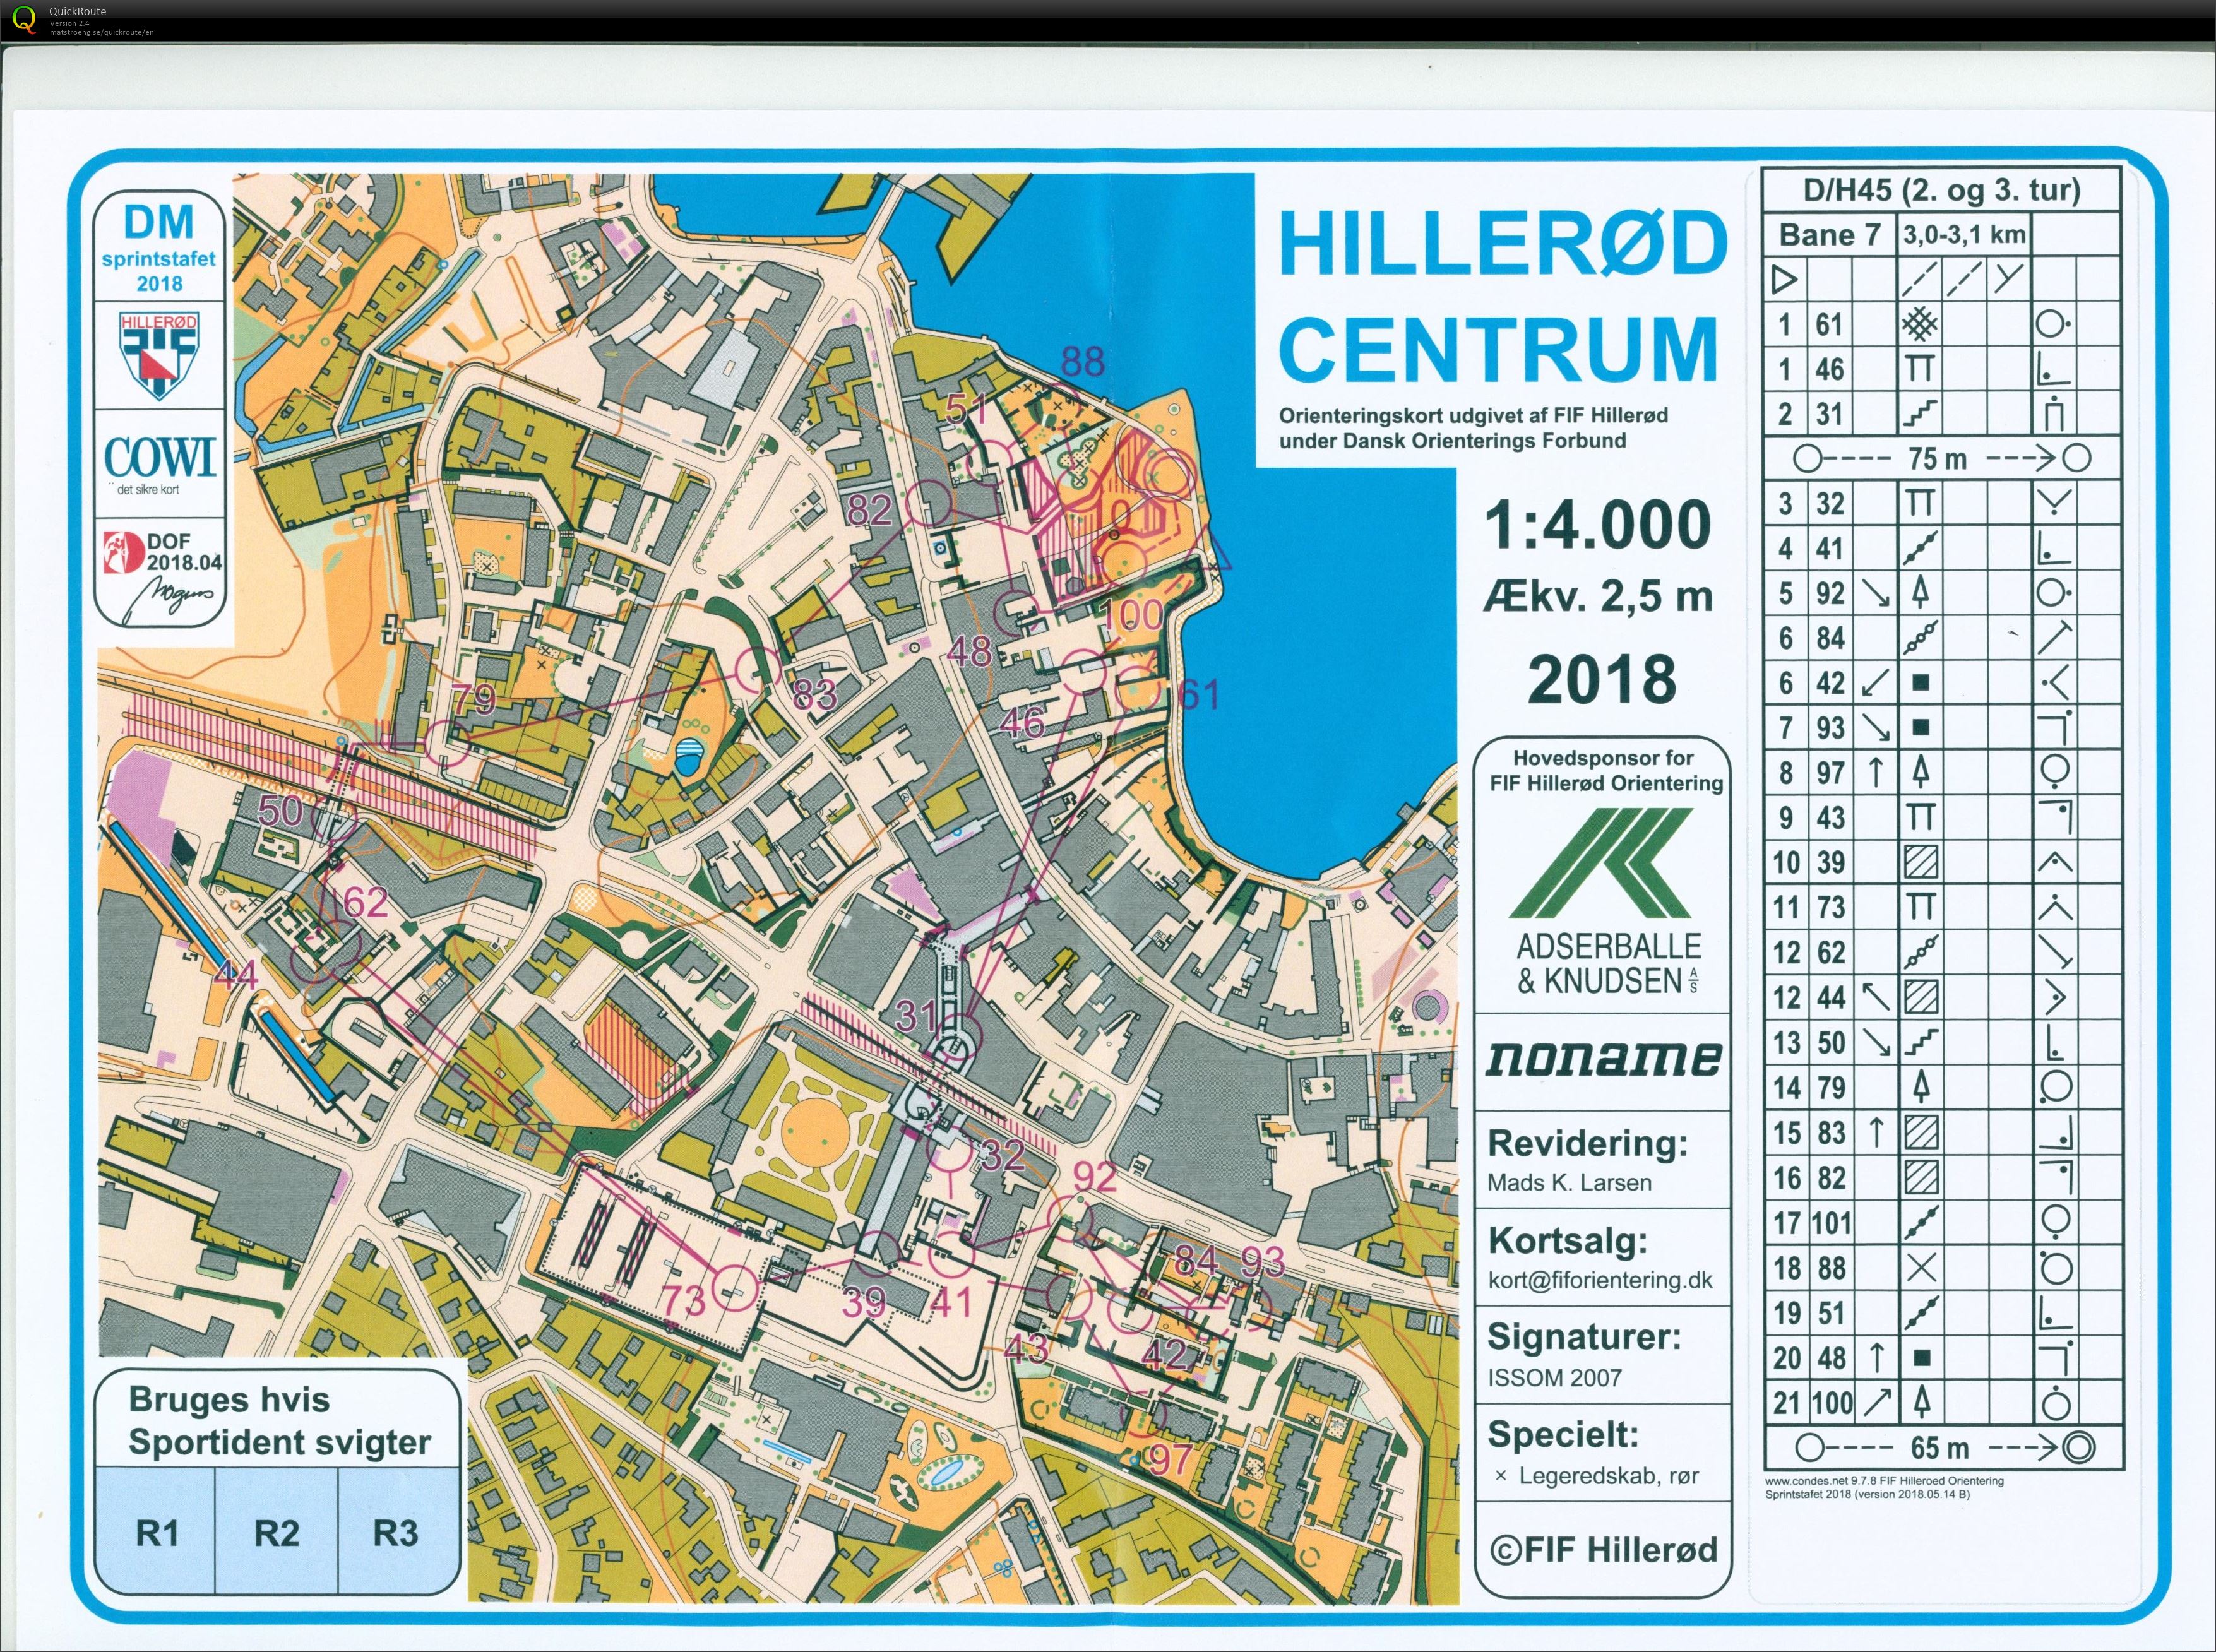 Hillerød sprint stafet D/H45 (2018-05-27)